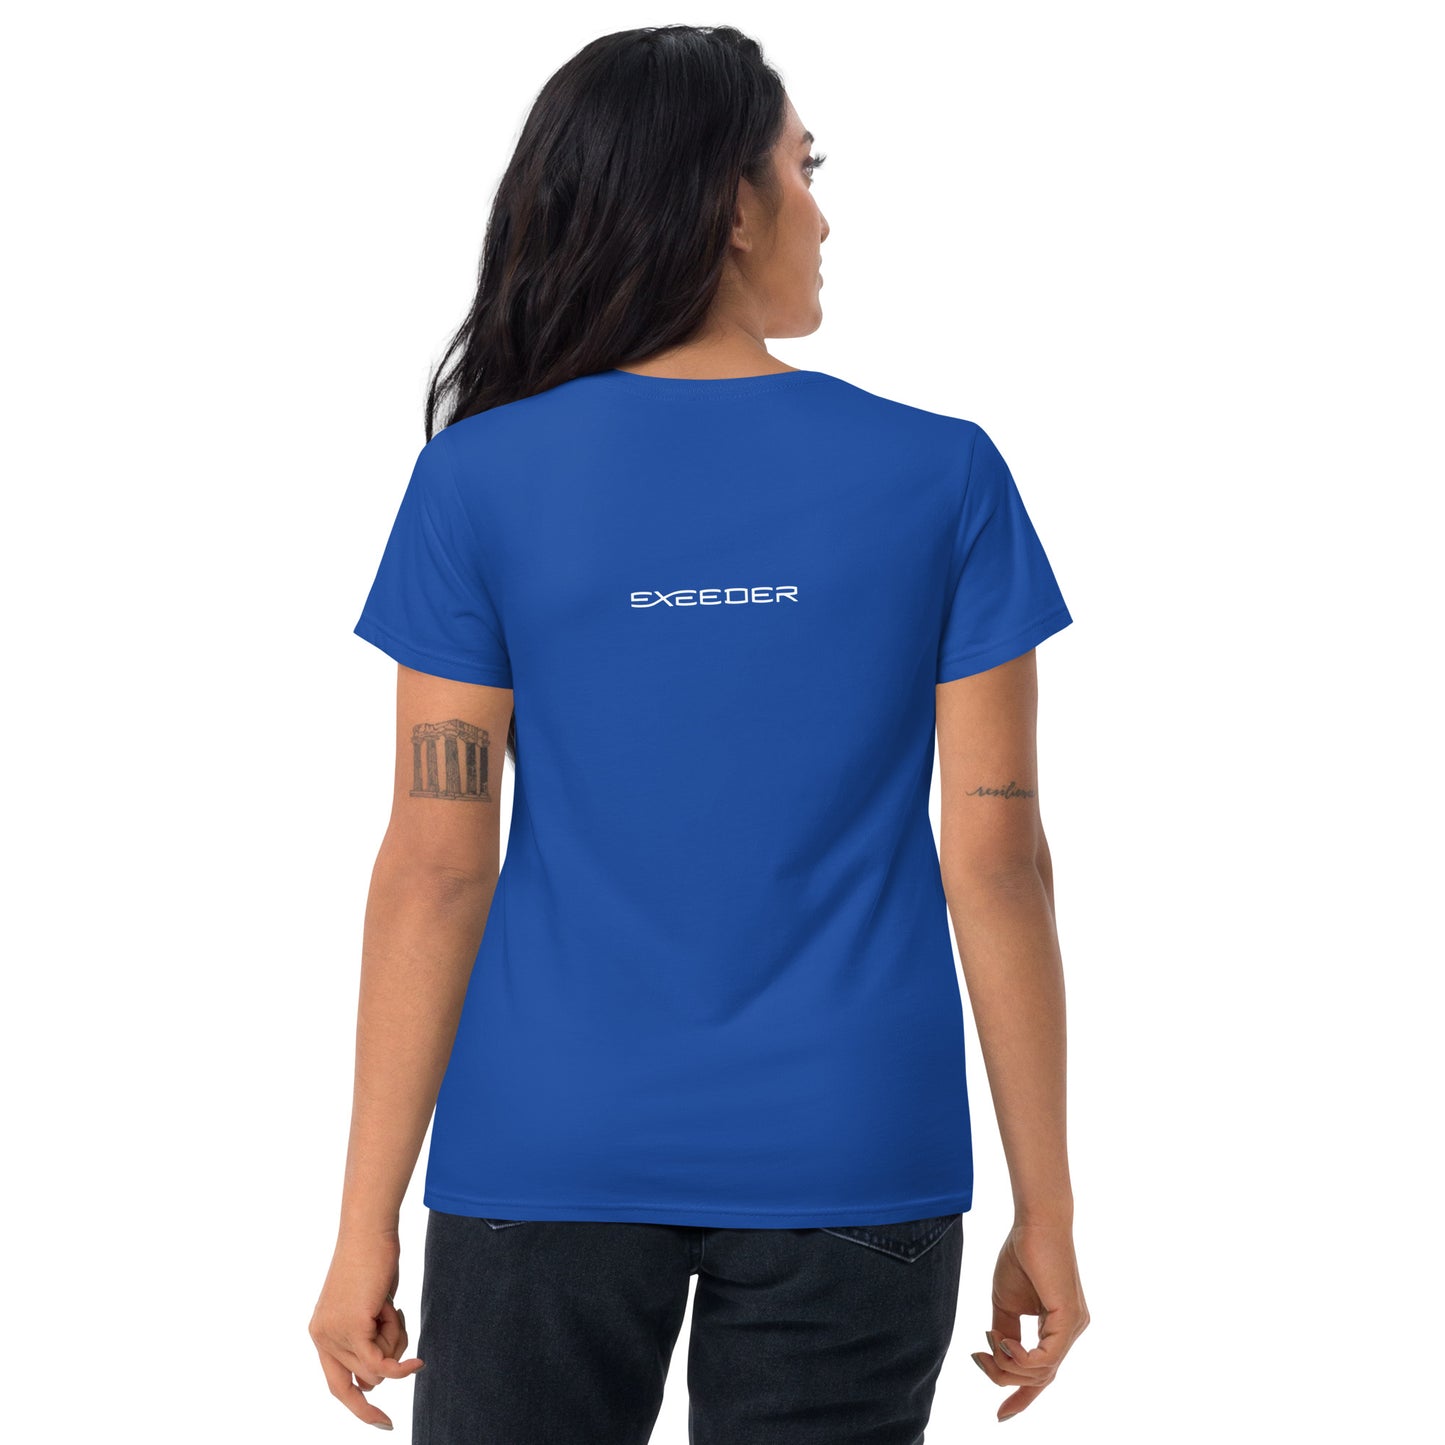 GOFURTHER Women's short sleeve t-shirt